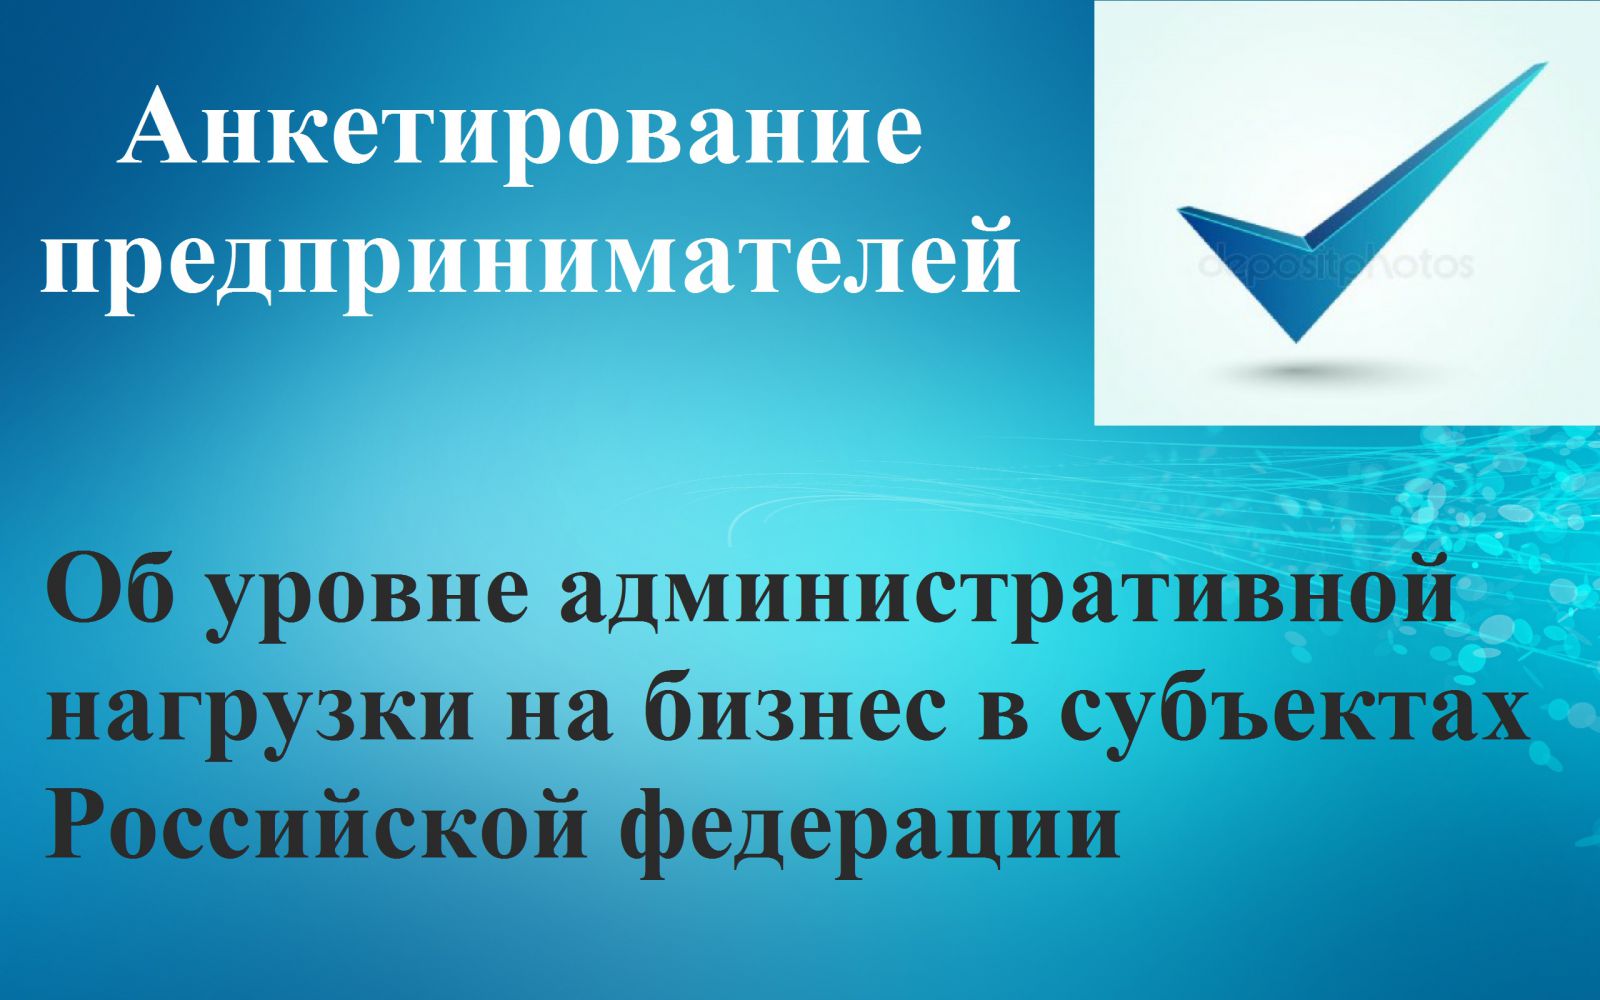 Анкетирование предпринимателей - Об уровне административной нагрузки на бизнес в субъектах Российской федерации